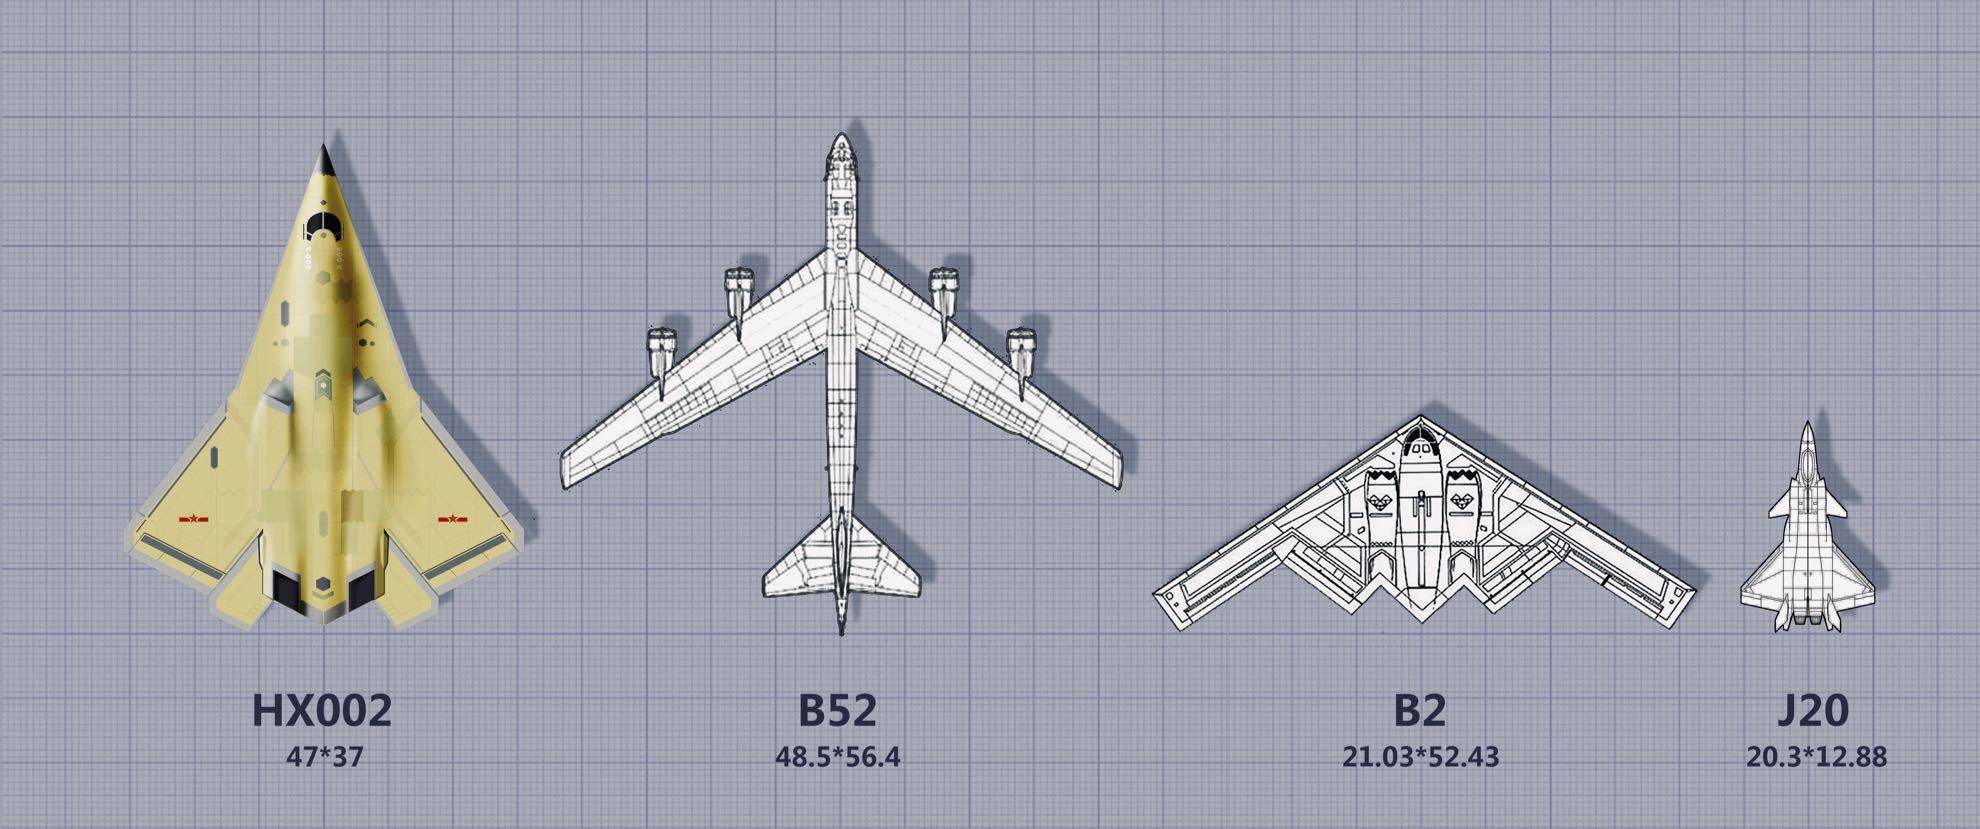 小展弦比飞翼布局,轰-20或采用隐身 超音速的设计!